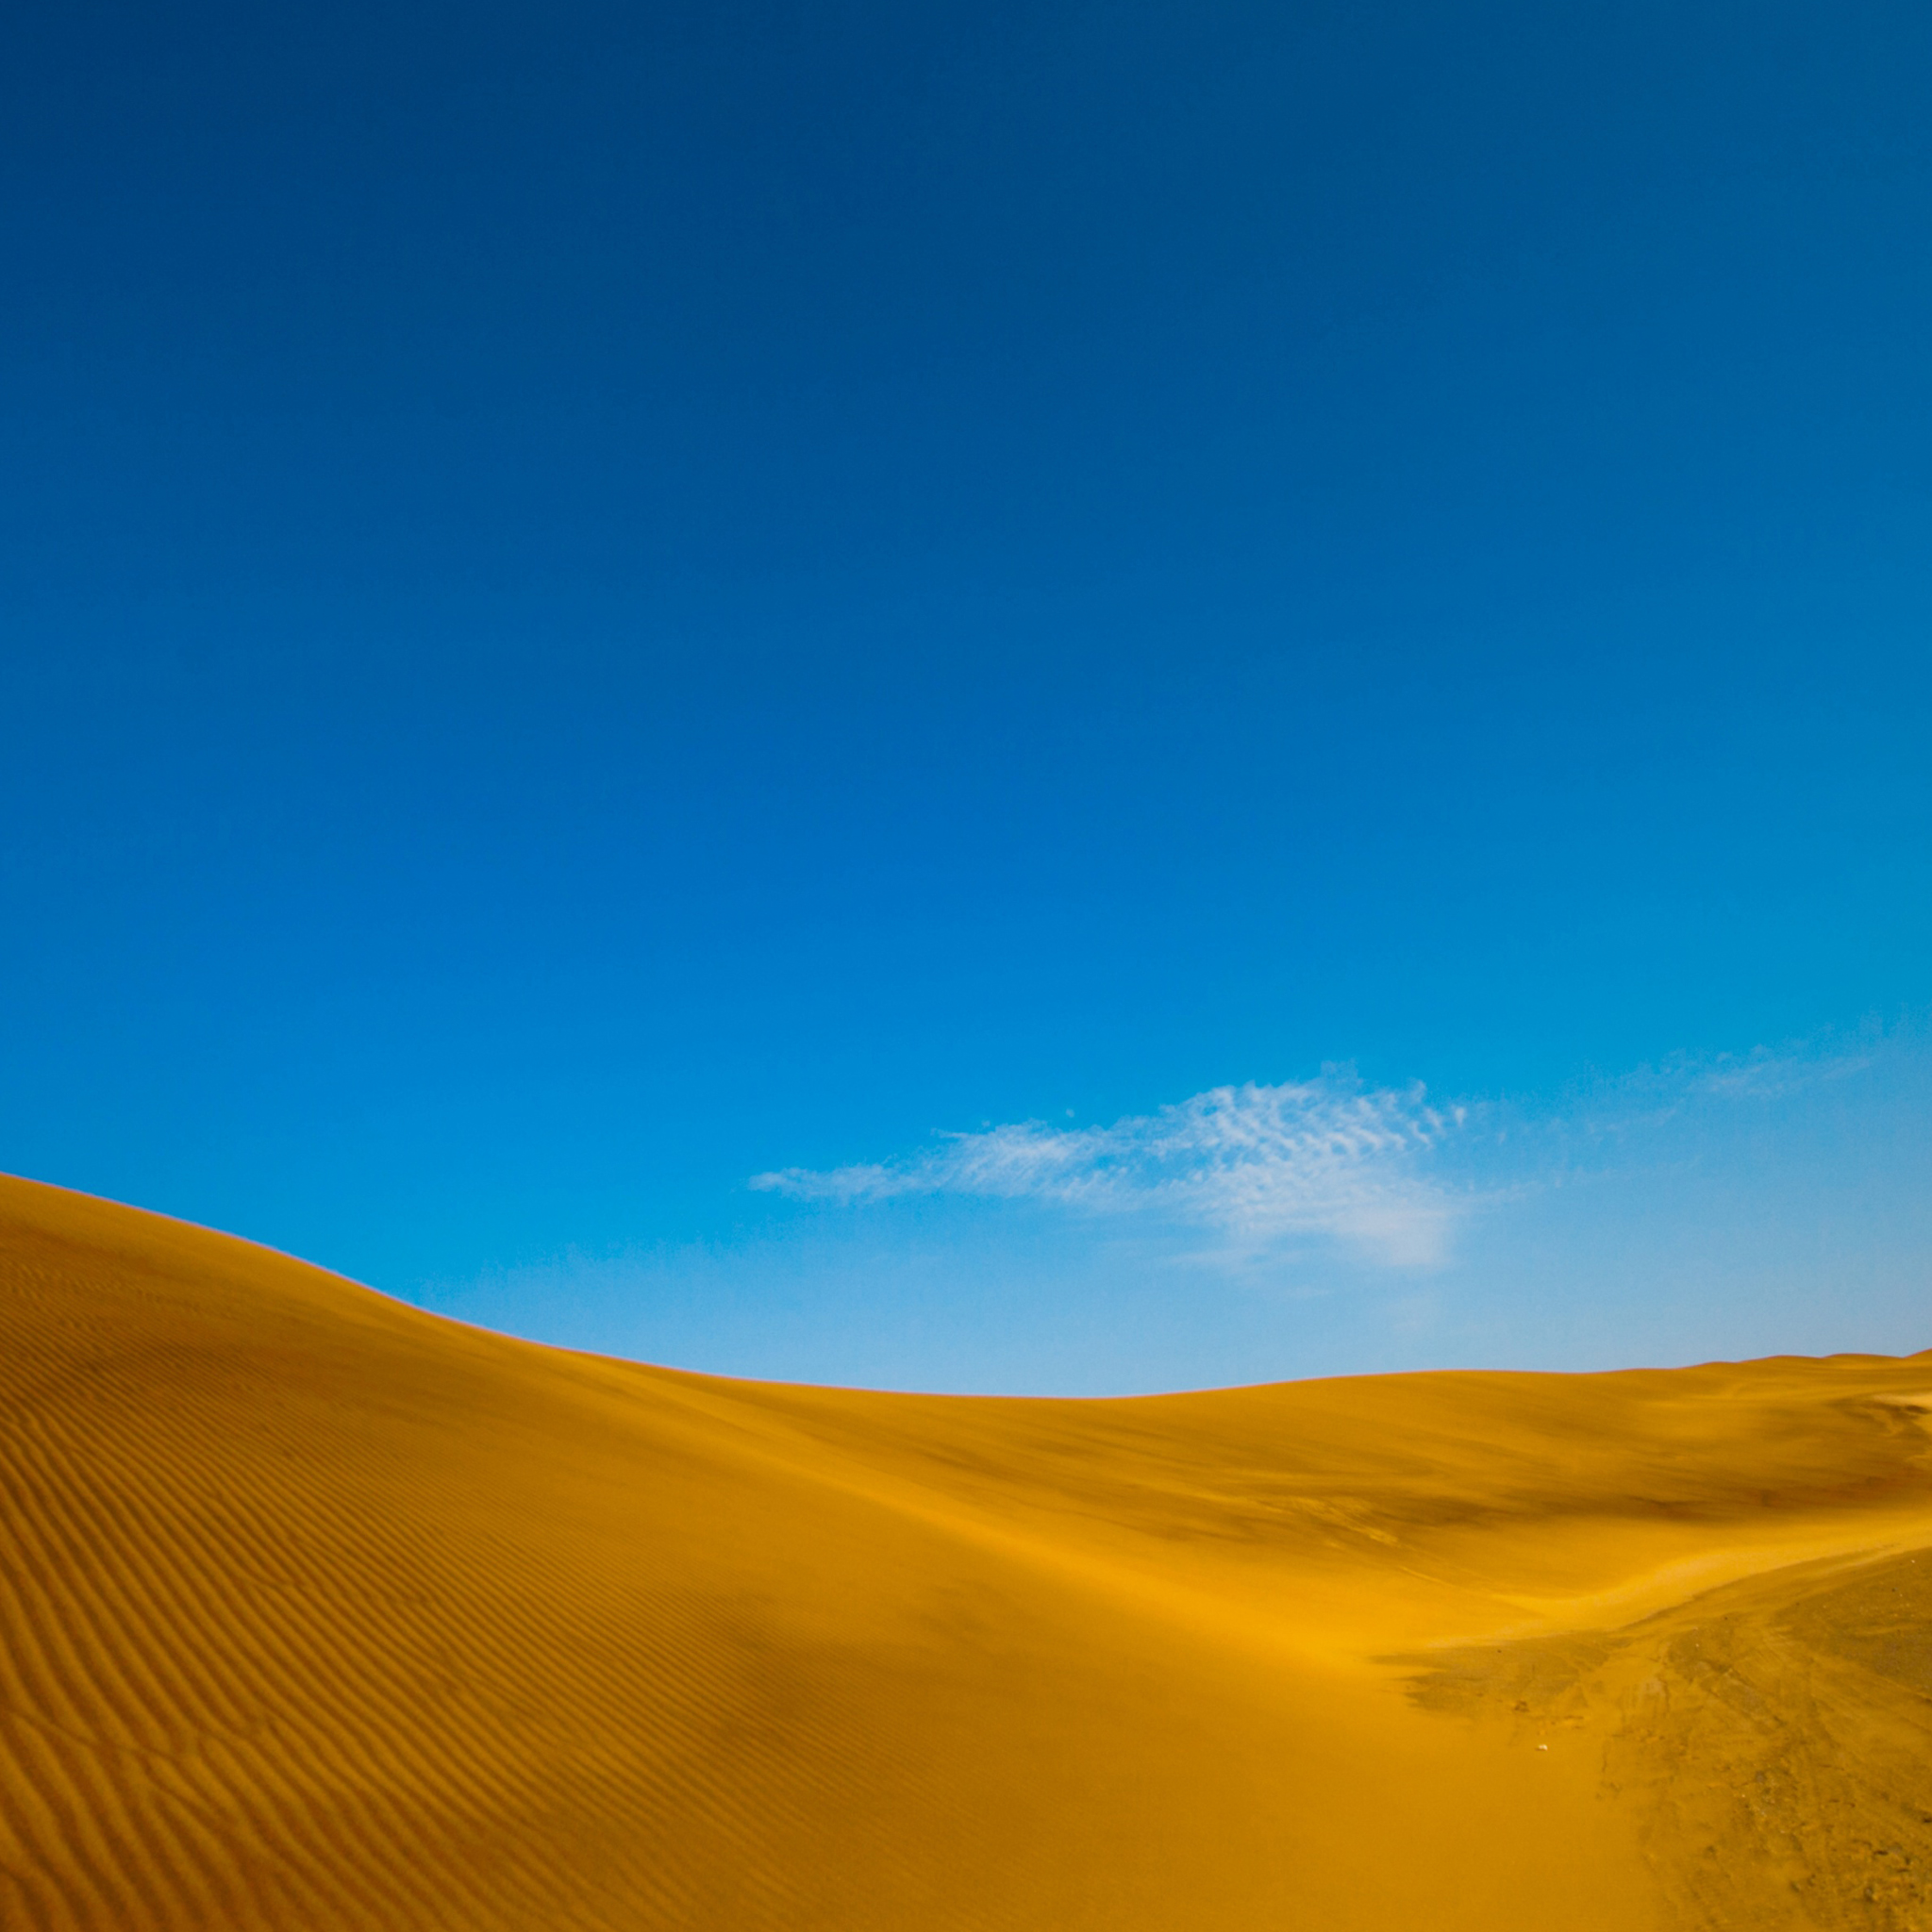 ipad wallpaper hd,desert,sky,sand,natural environment,blue